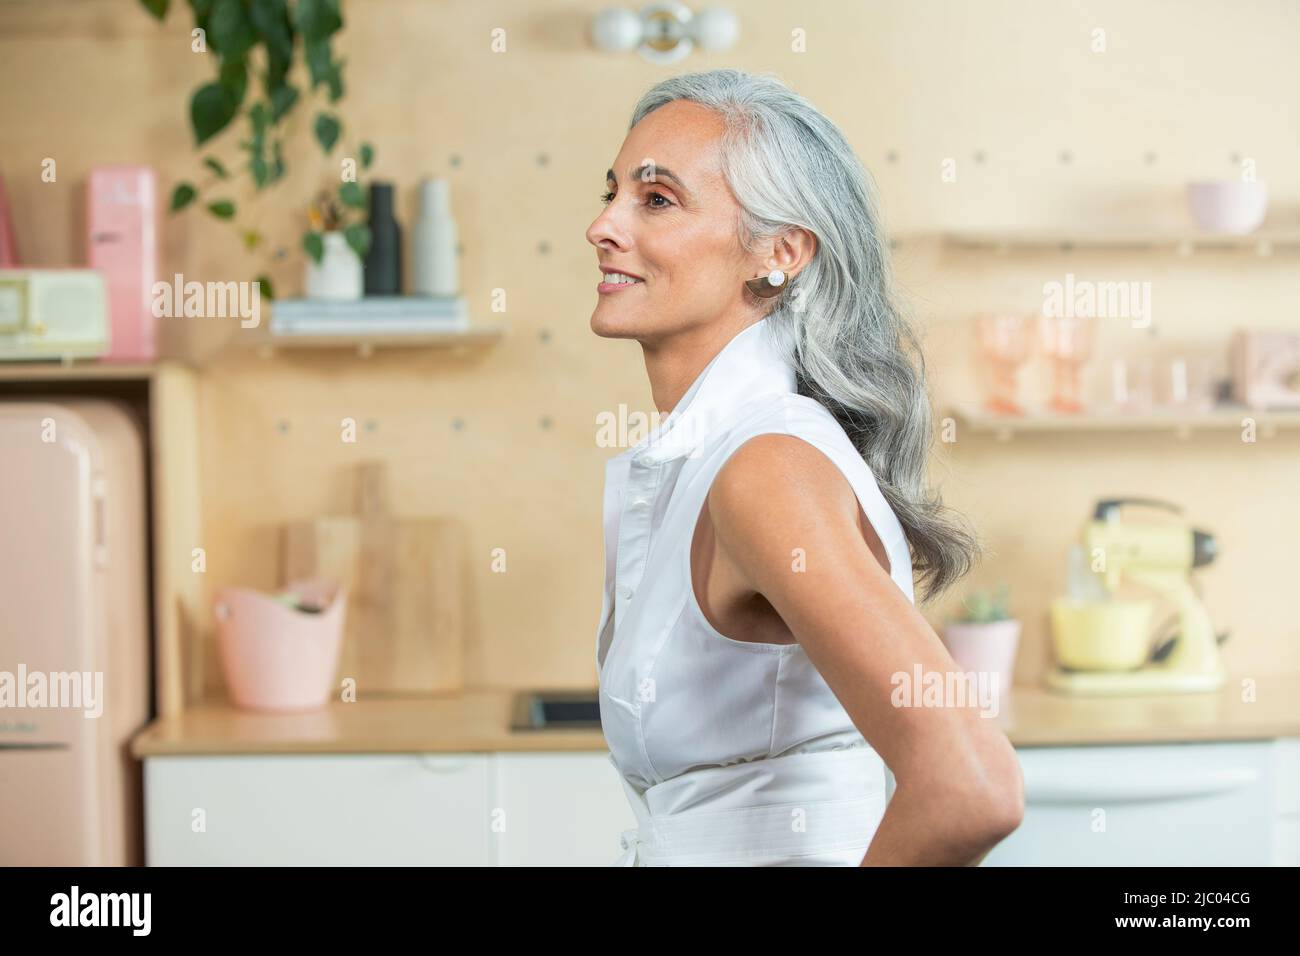 In piedi in una cucina moderna, Una giovane donna di mezza età con capelli grigi guarda fuori dalla fotocamera. Foto Stock